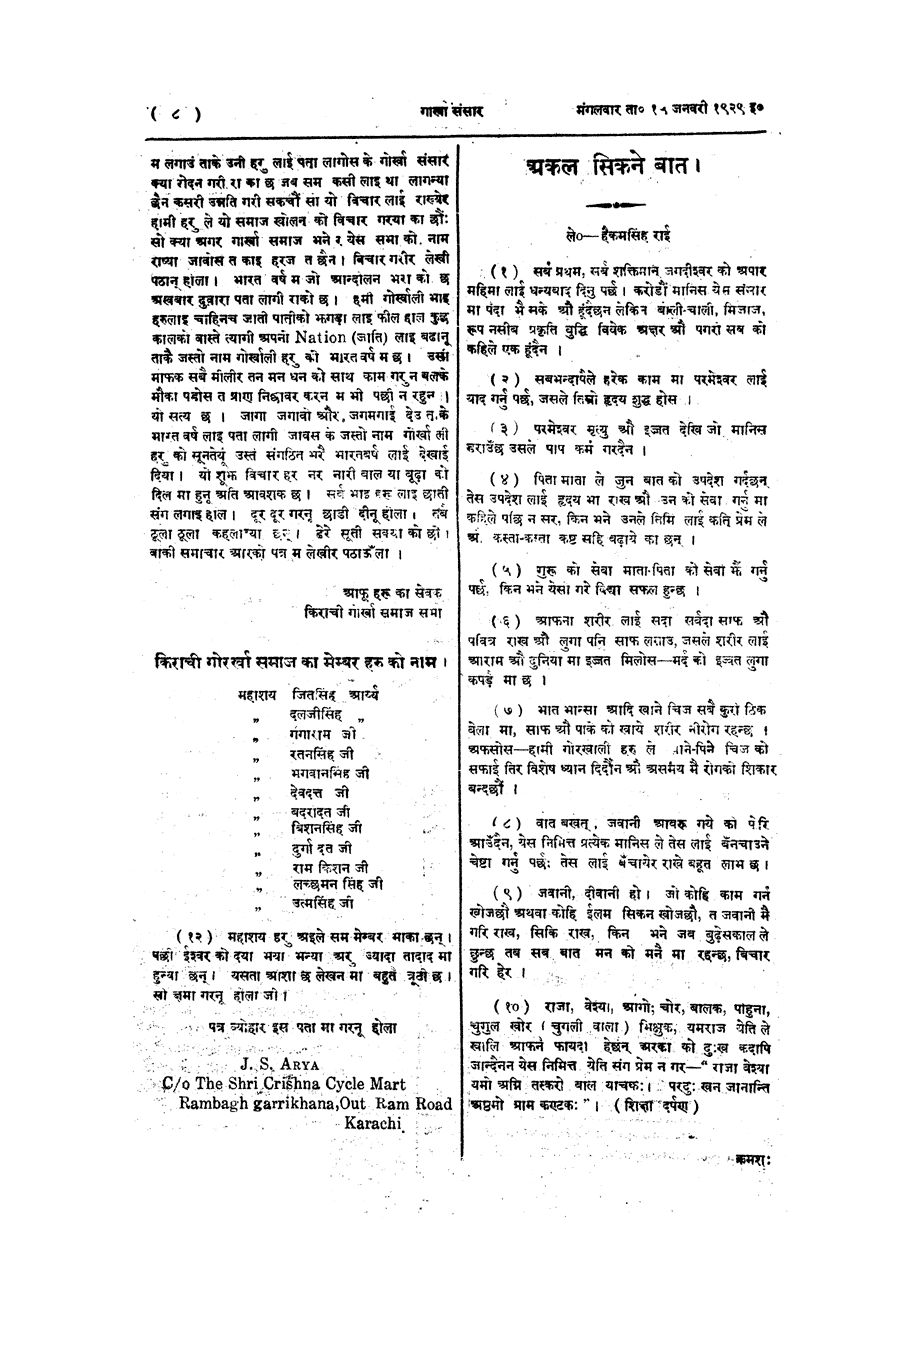 Gorkha Sansar, 15 Jan 1929, page 8